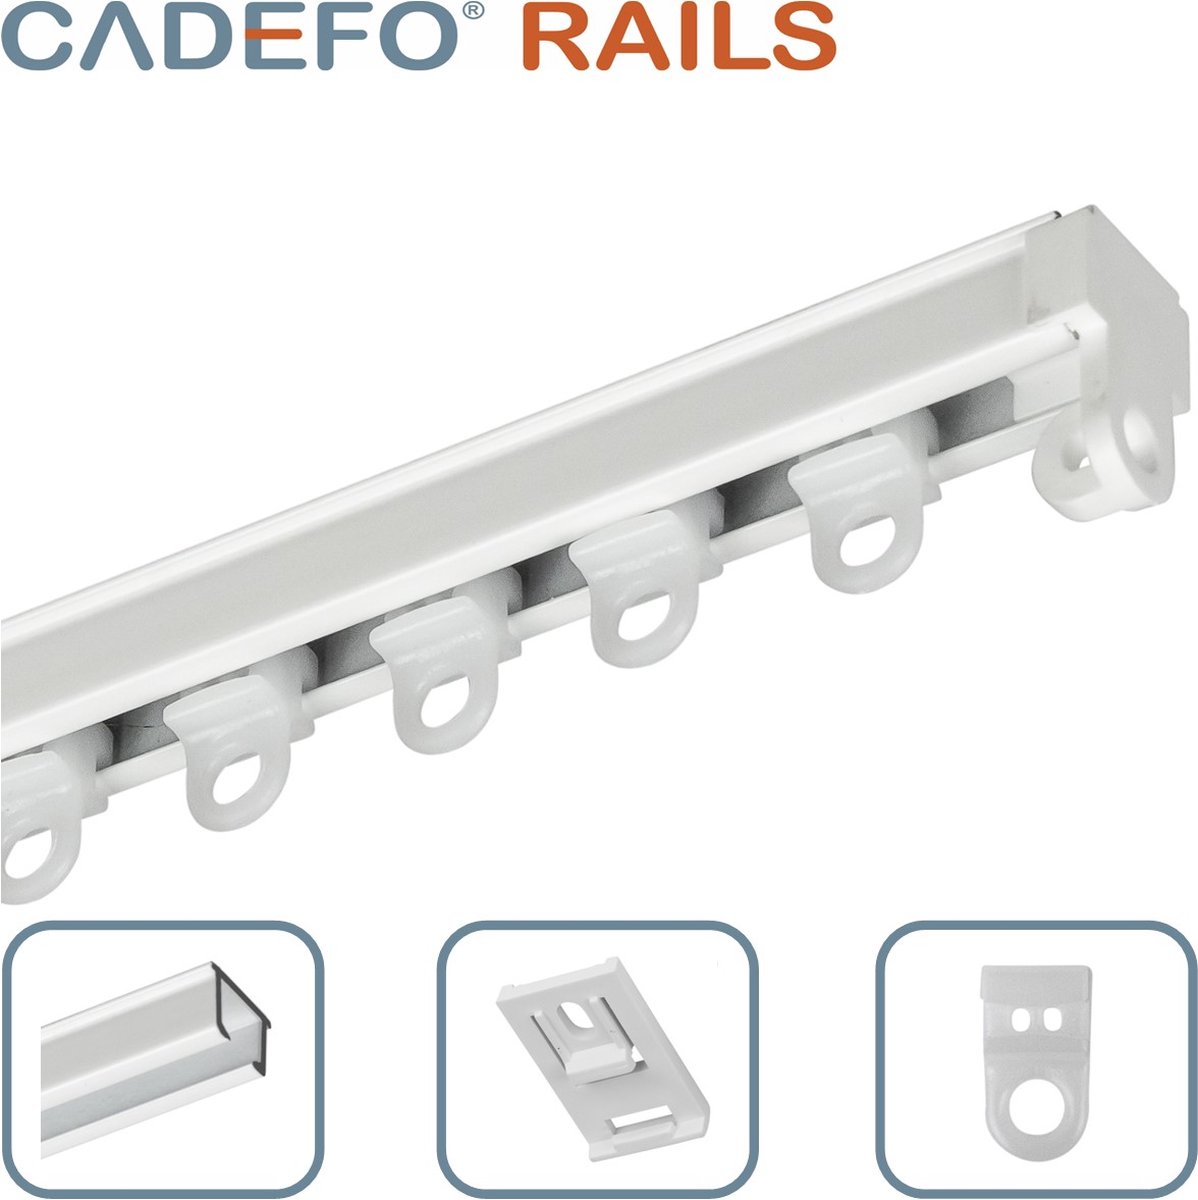 CADEFO RAILS (251 - 300 cm) Gordijnrails - Compleet op maat! - UIT 1 STUK - Leverbaar tot 6 meter - Plafondbevestiging - Lengte 253 cm